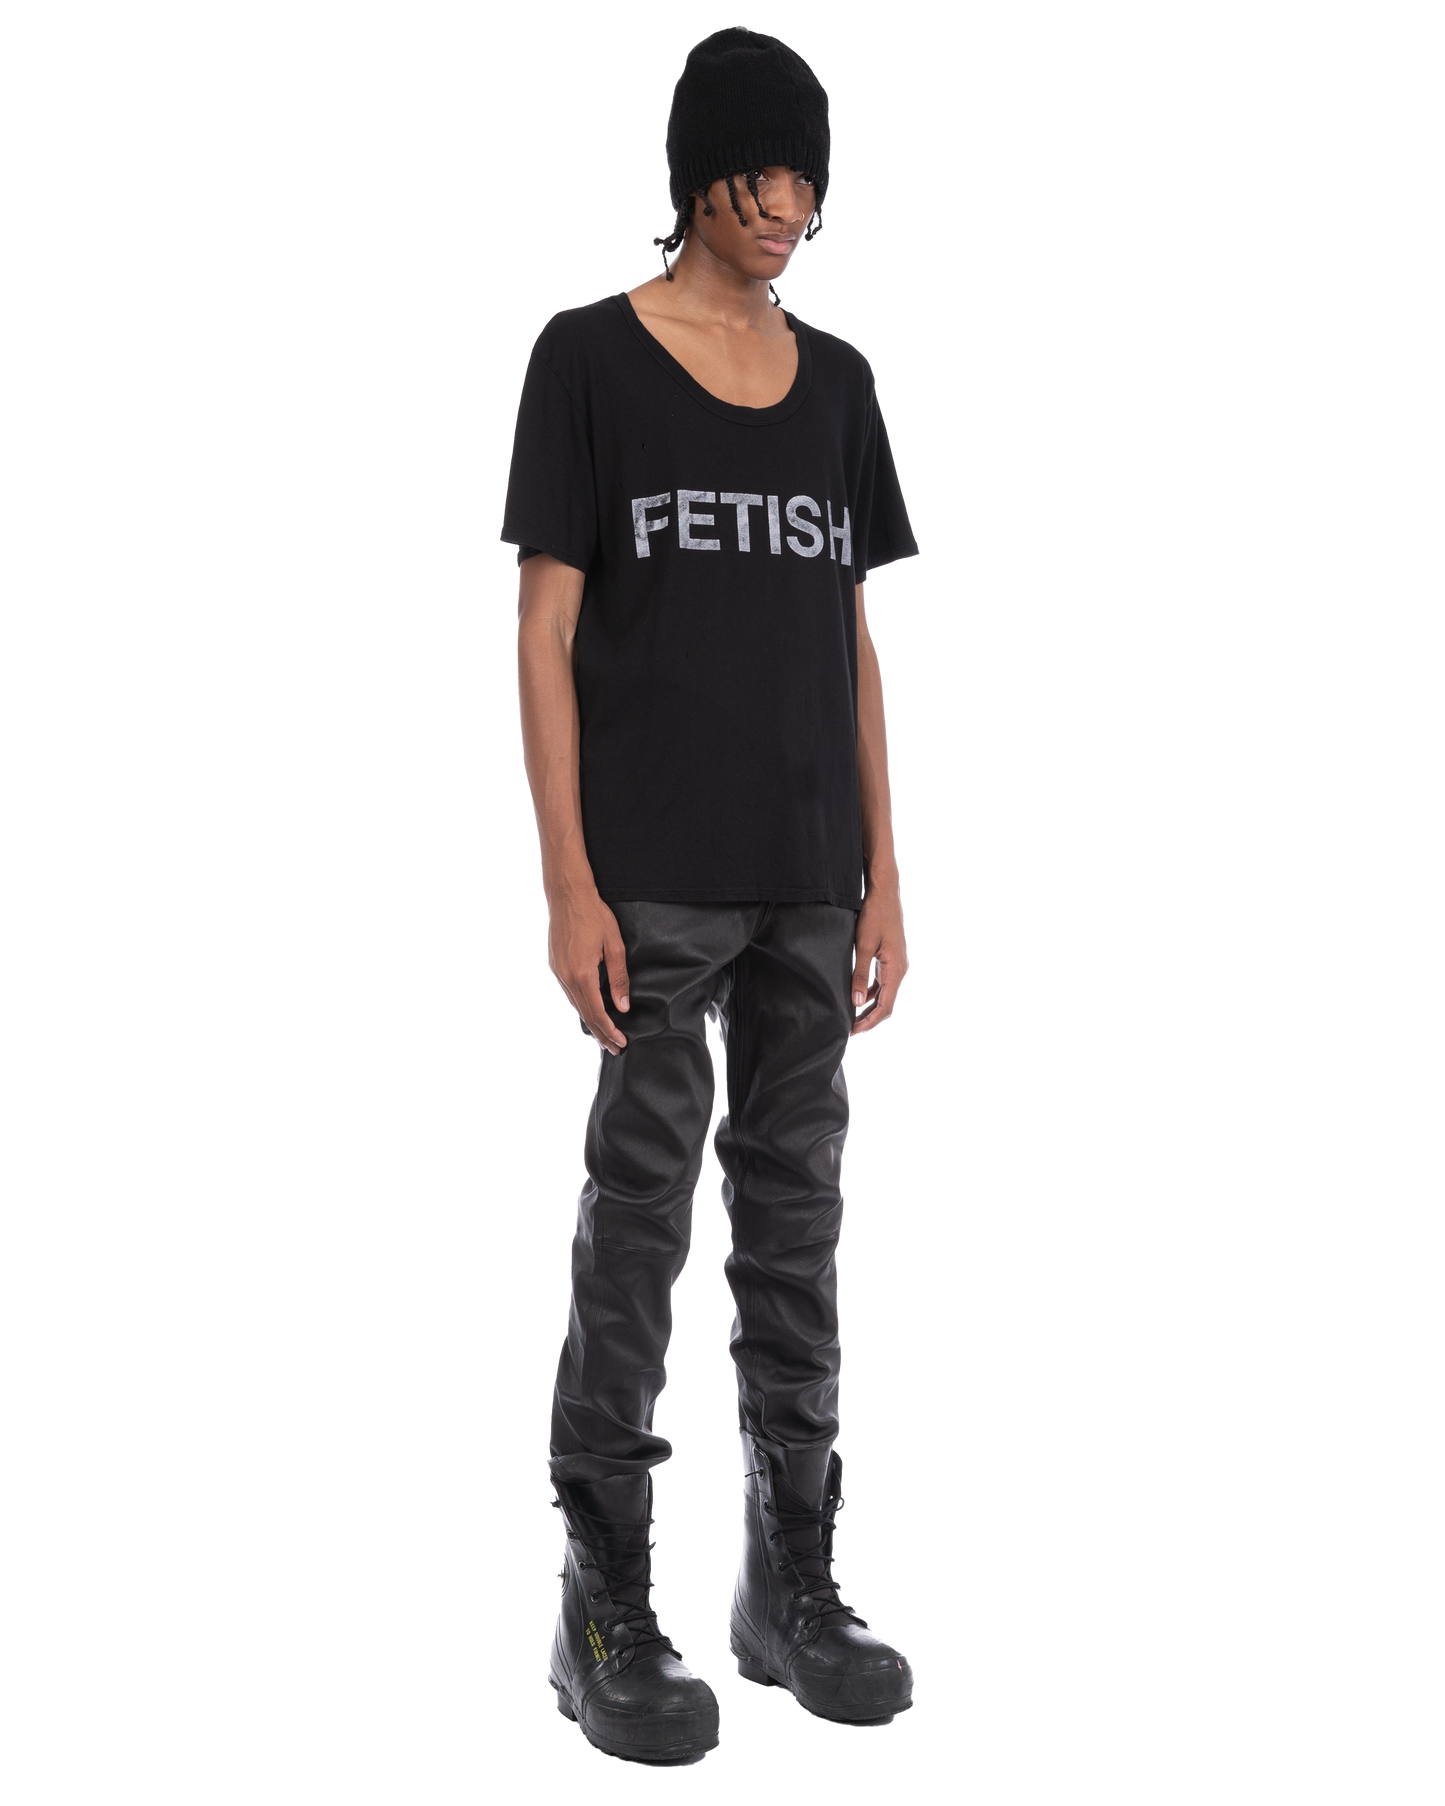 Fetish T-shirt: Vintage Black